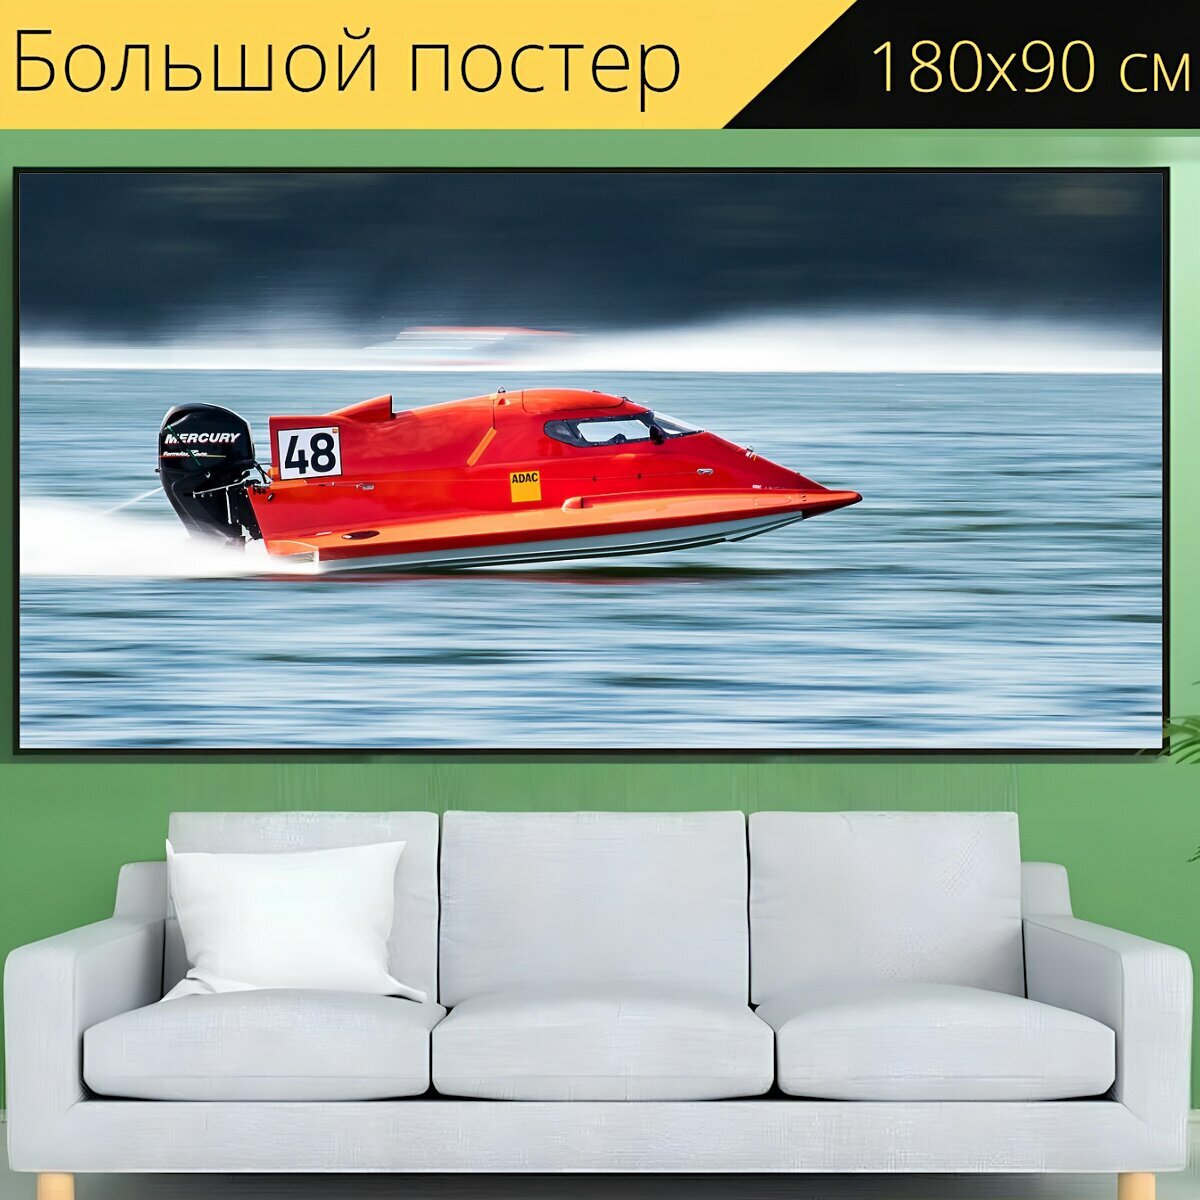 Большой постер "Моторная лодка, скорость, быстроходный катер" 180 x 90 см. для интерьера